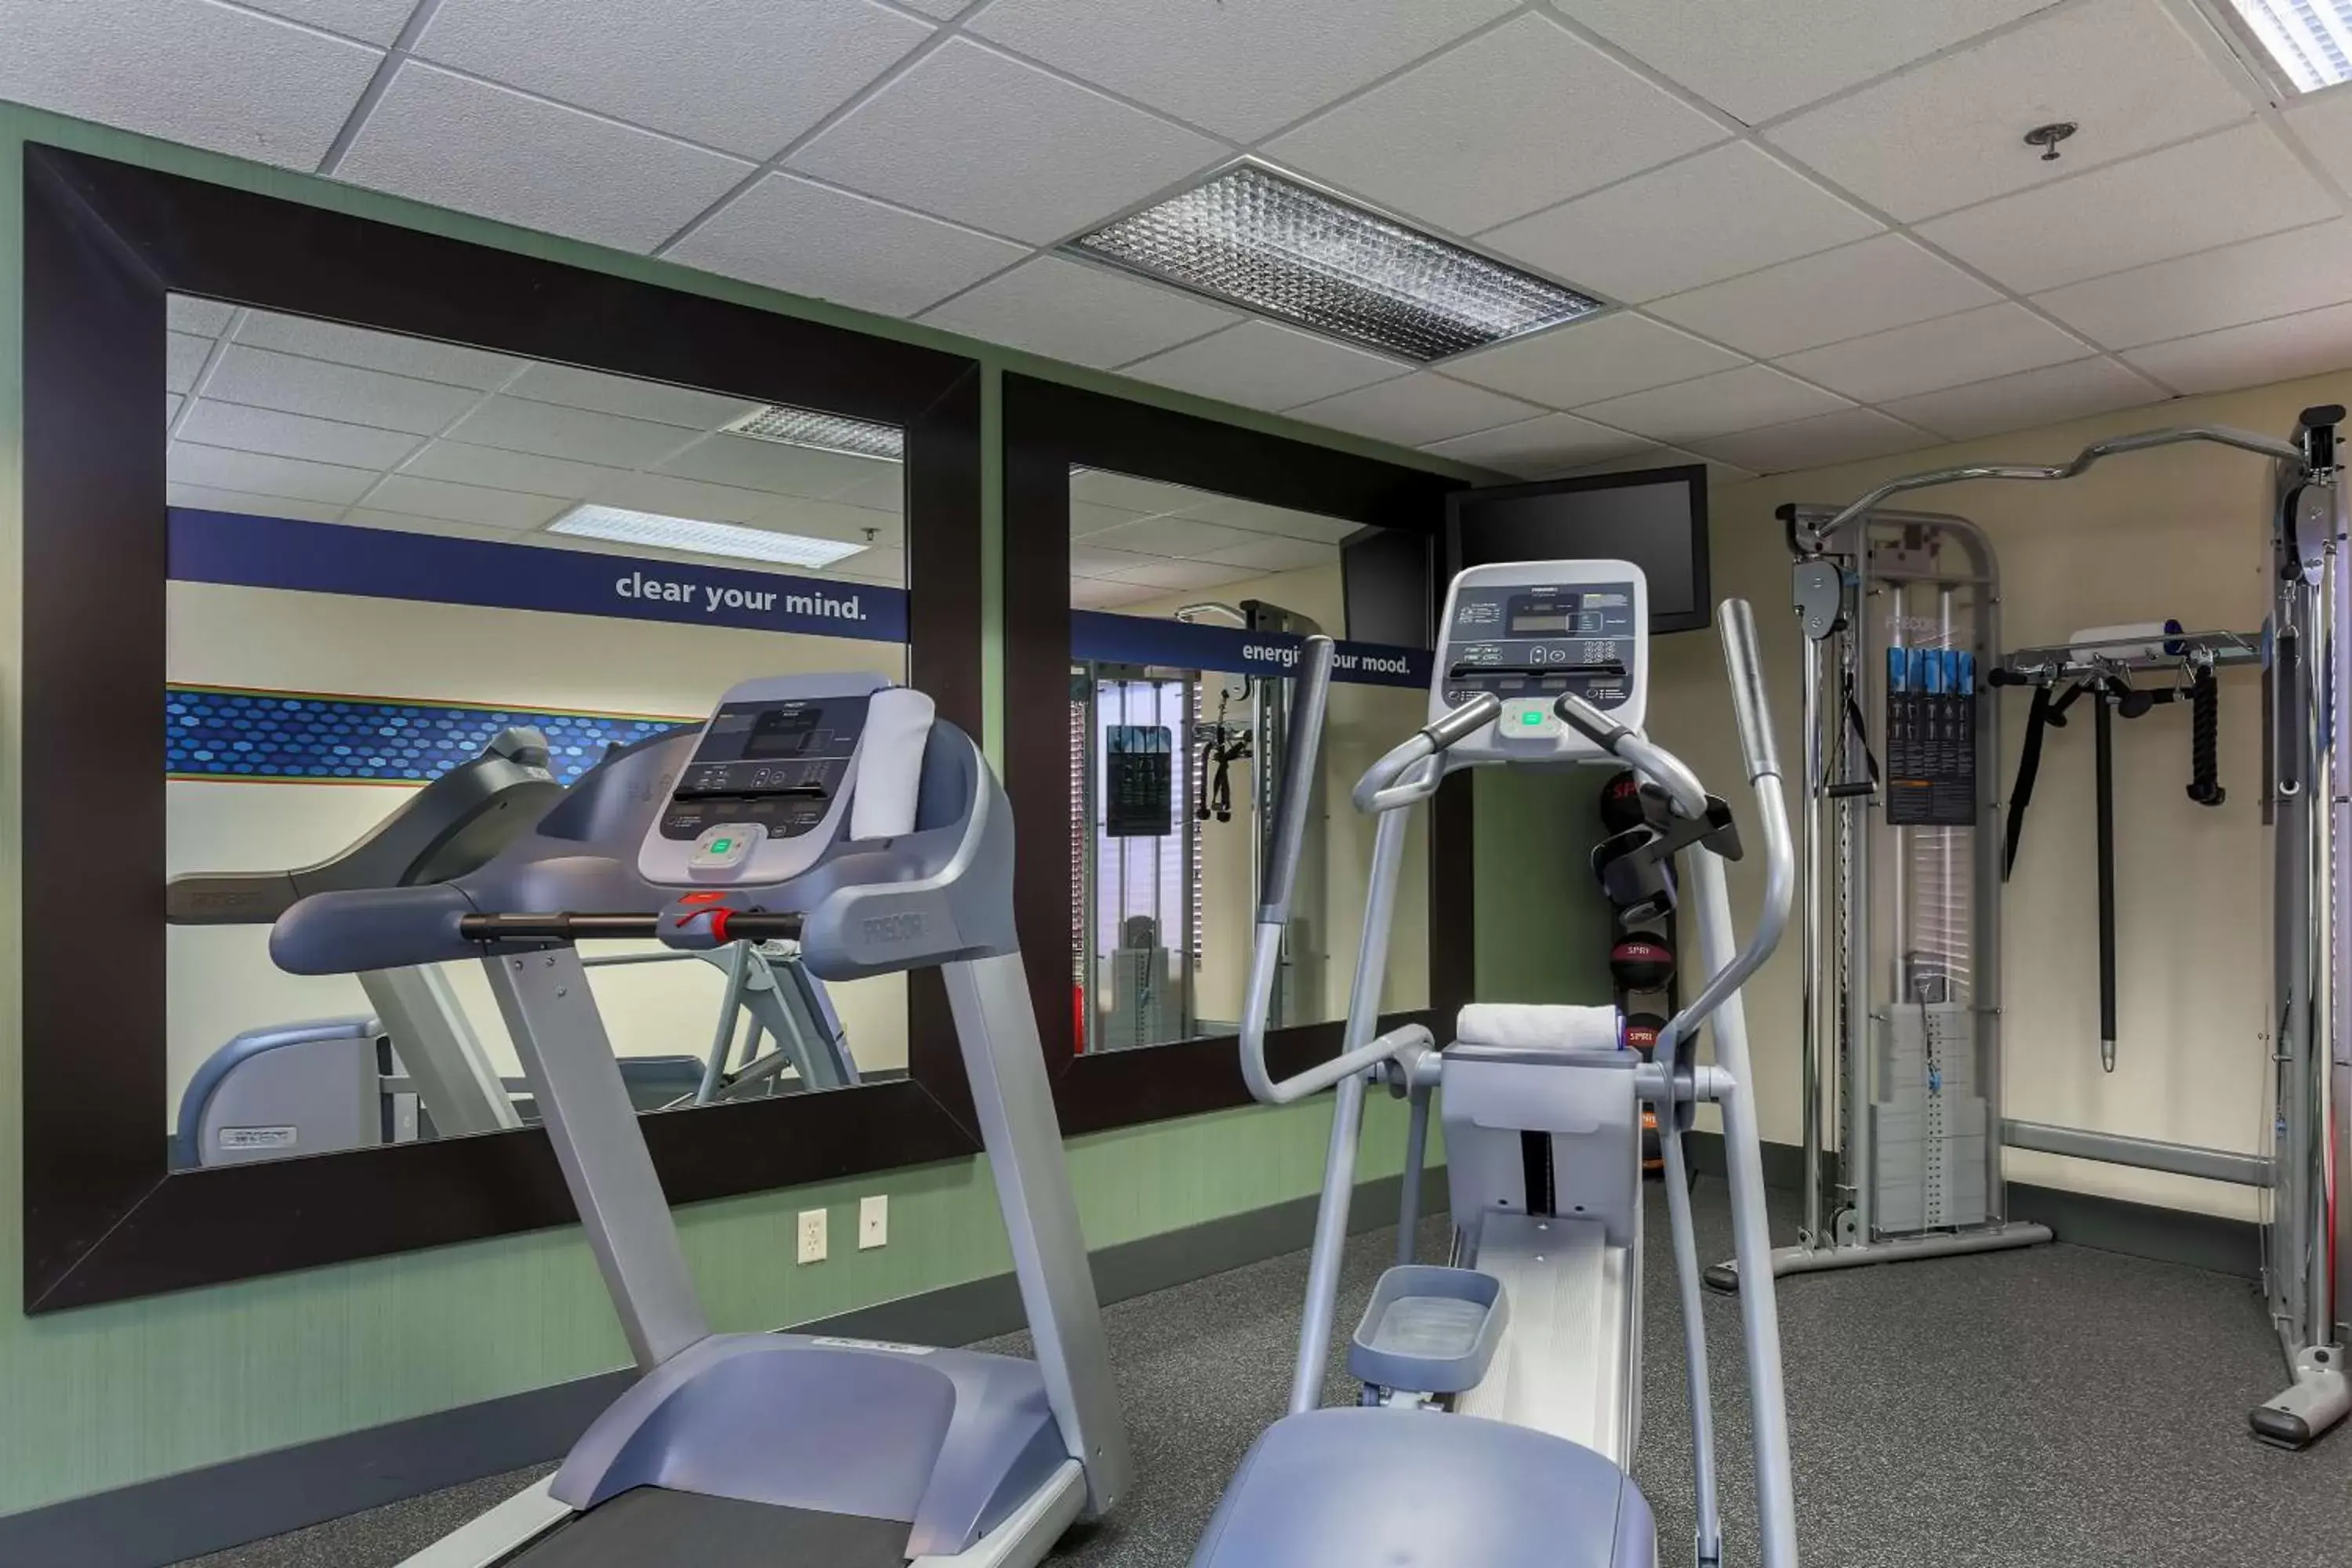 Fitness centre/facilities, Fitness Center/Facilities in Hampton Inn Dayton/Fairborn